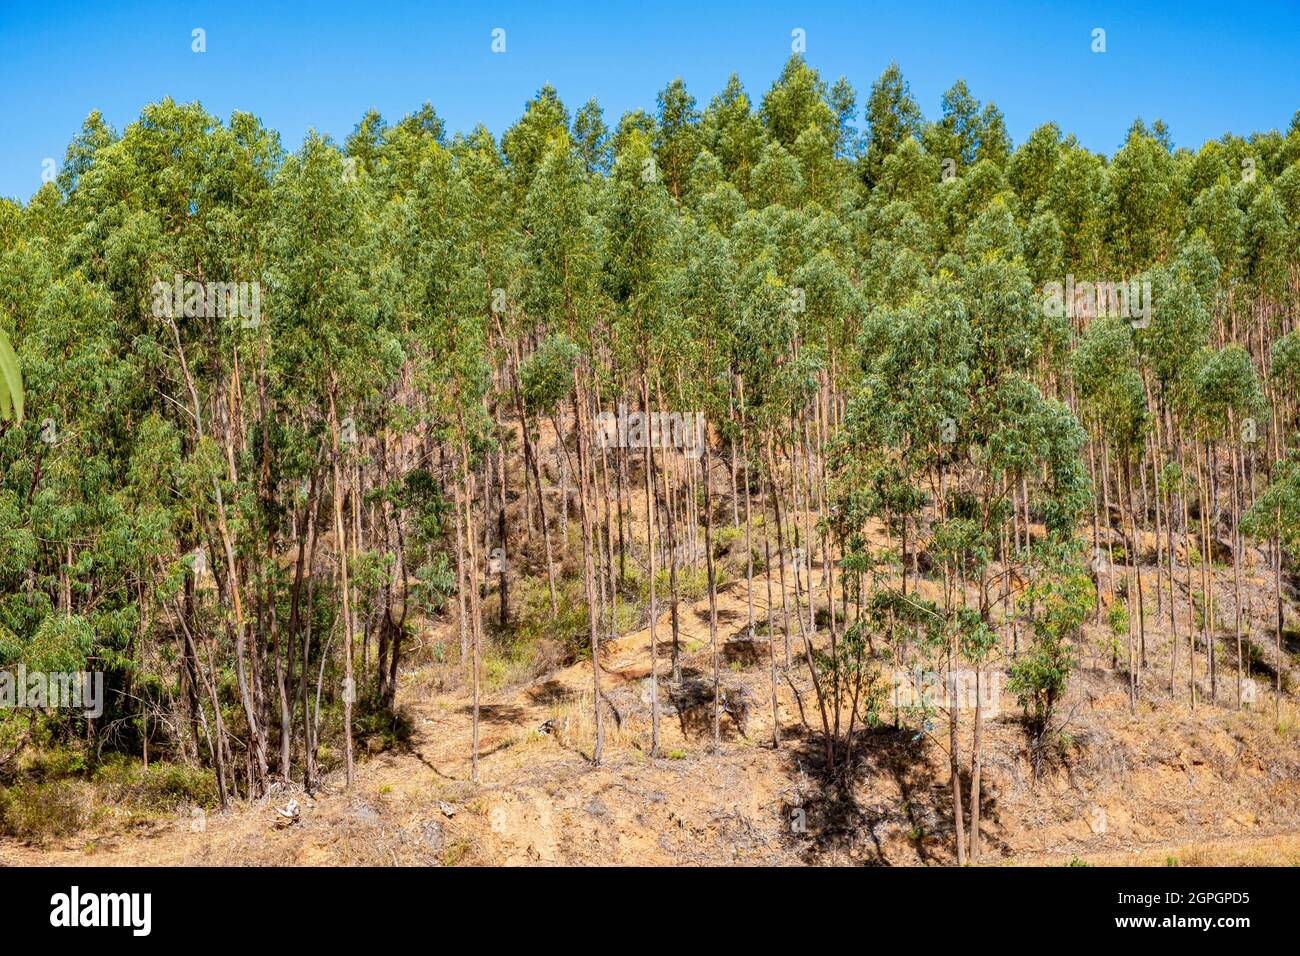 Portugal, Algarve, sierra de Monchique, eucalyptus forest Stock Photo